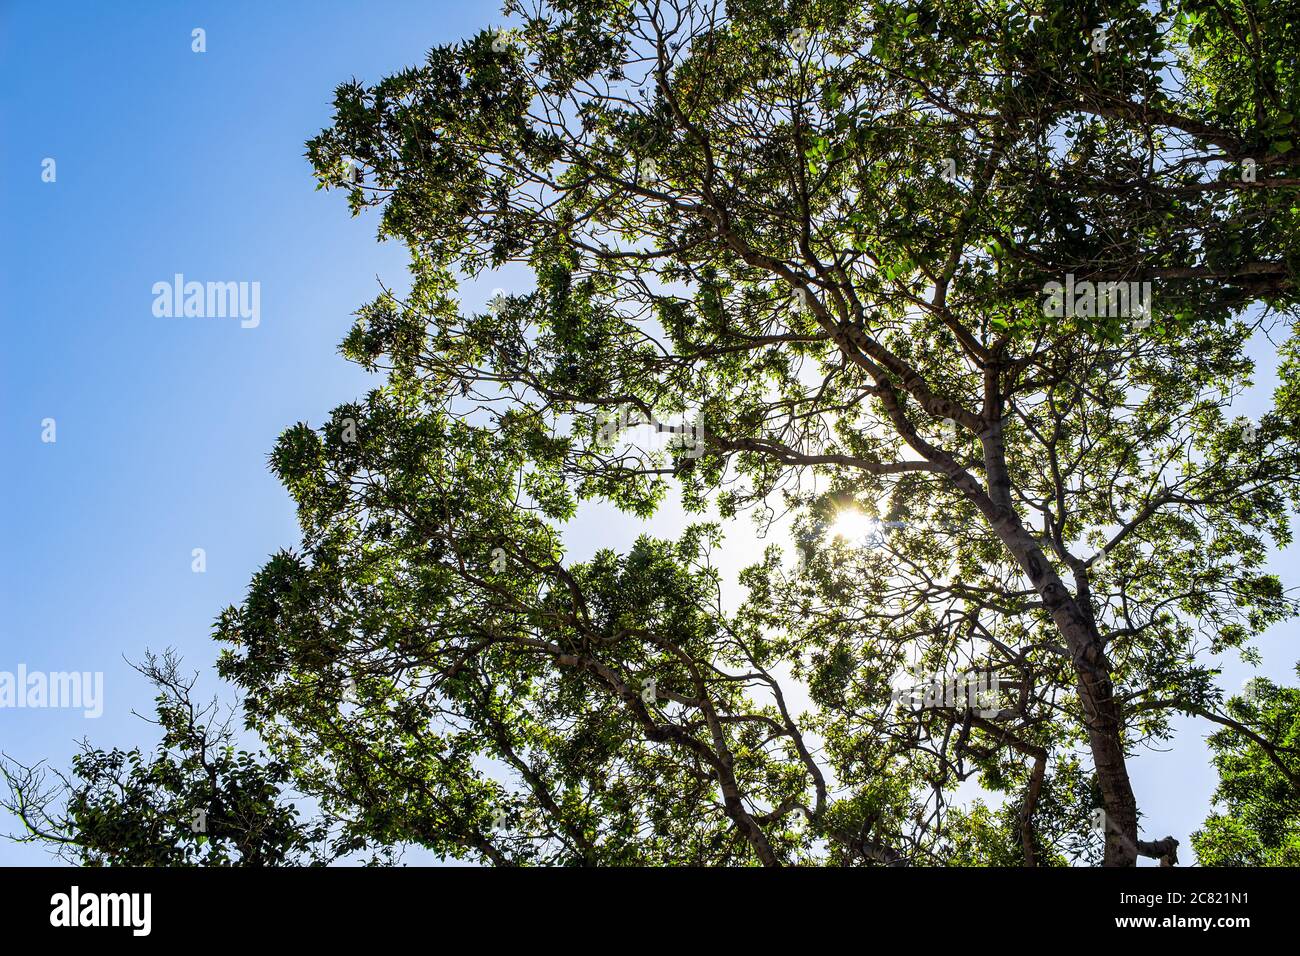 Il sole splende attraverso i rami di alberi e folta fogliame verde, contro un cielo azzurro luminoso. Una calda giornata estiva nella foresta Foto Stock